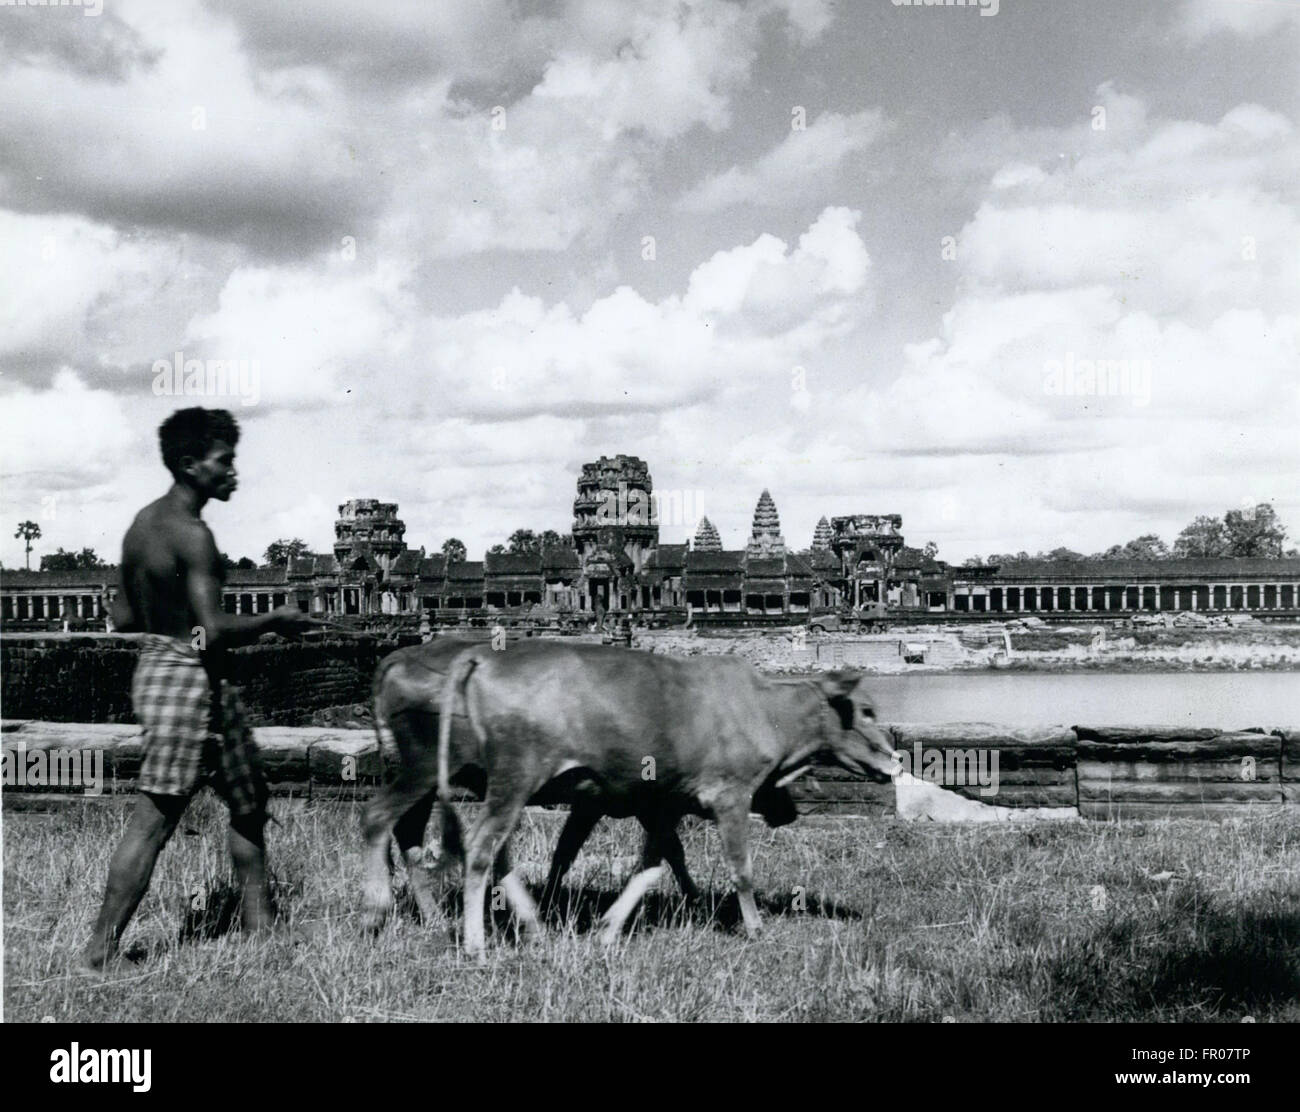 1962 - La vie comme d'habitude : Un agriculteur près de Siem Reap, Cambodge, n'est pas impressionné par Angkor Wat, le temple fantastique construit au xiième siècle. Bien que c'est une des merveilles du monde, il est plus habitué à ce que sont les visiteurs, et qu'il ignore. © Keystone Photos USA/ZUMAPRESS.com/Alamy Live News Banque D'Images